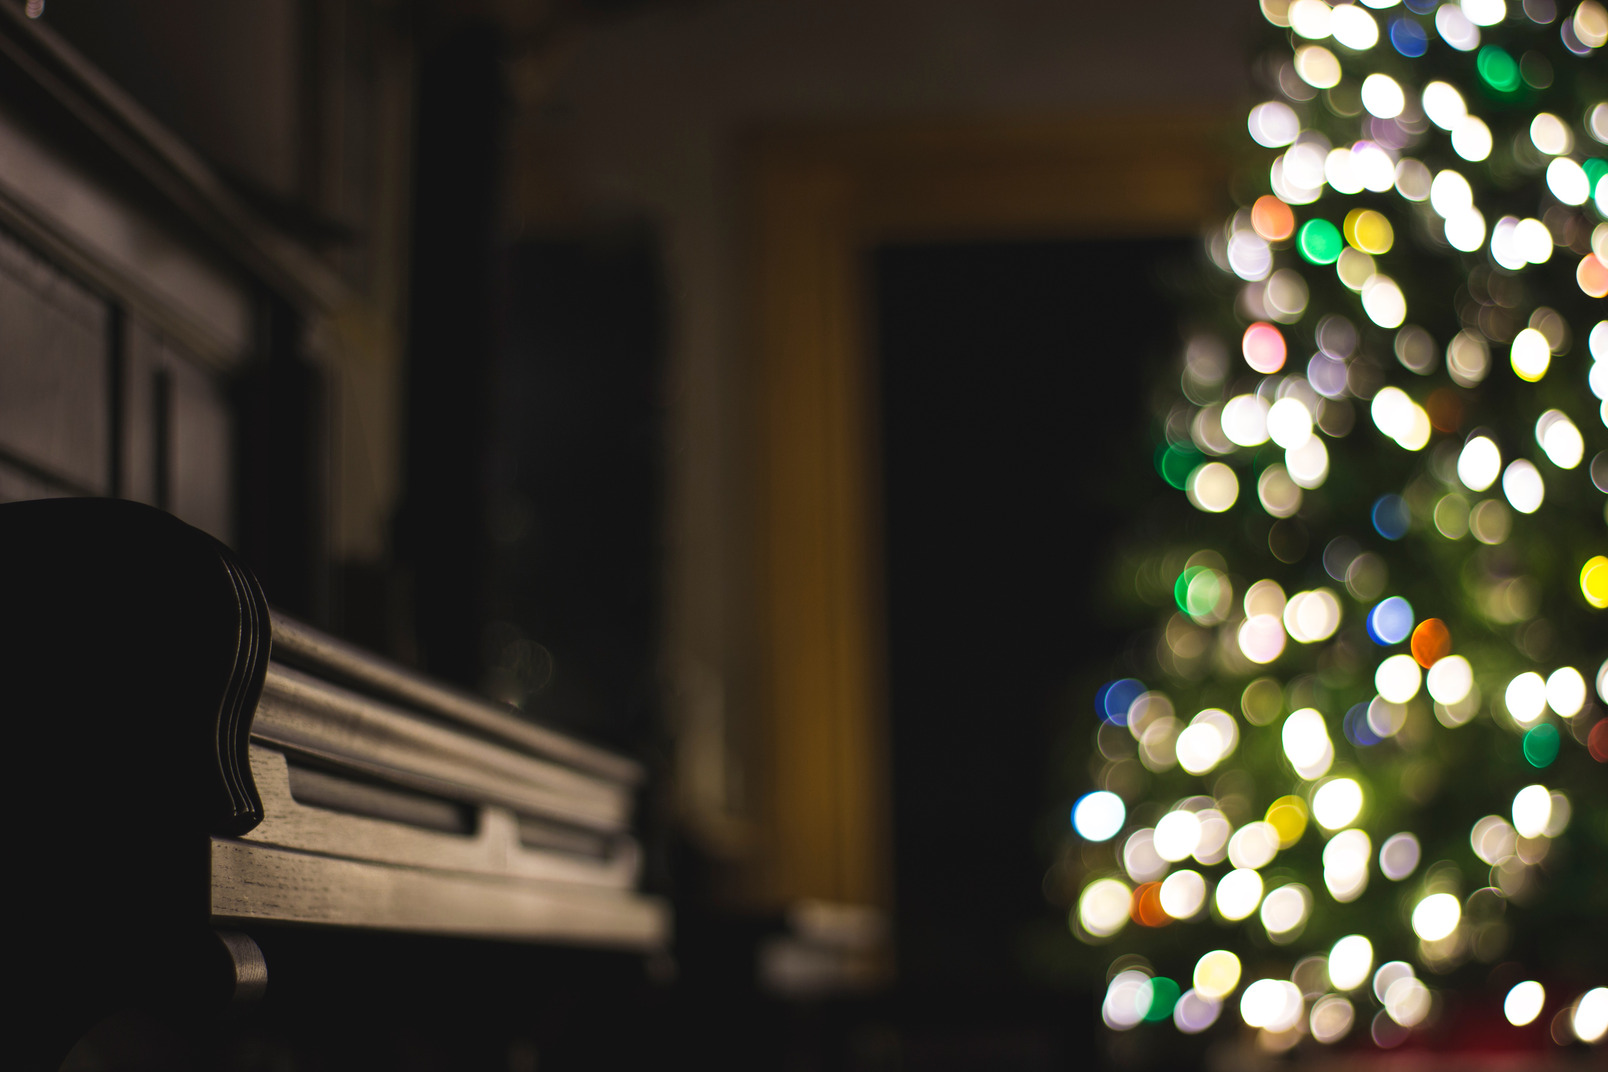 Dunkler raum mit klavier und weihnachtsbaum